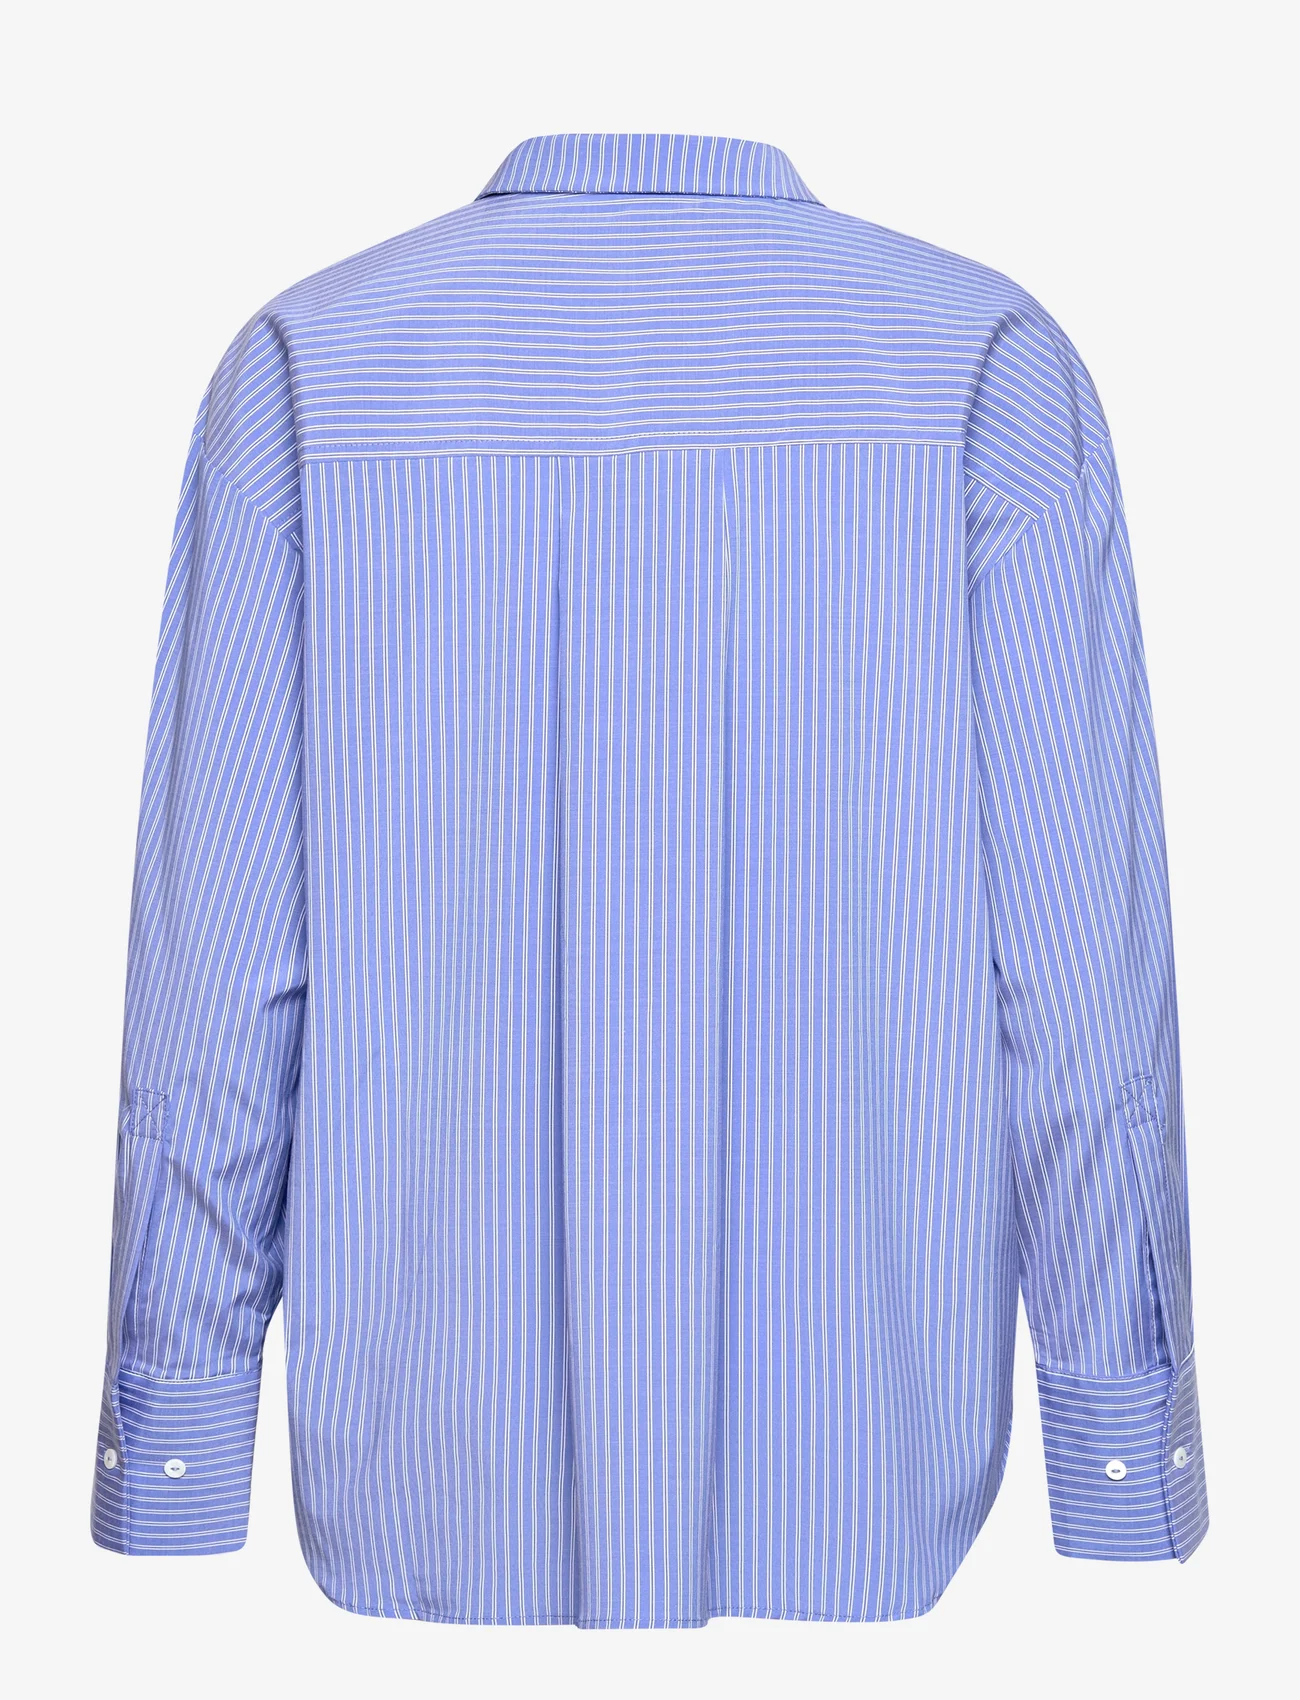 Sofie Schnoor - Shirt - pitkähihaiset paidat - blue striped - 1